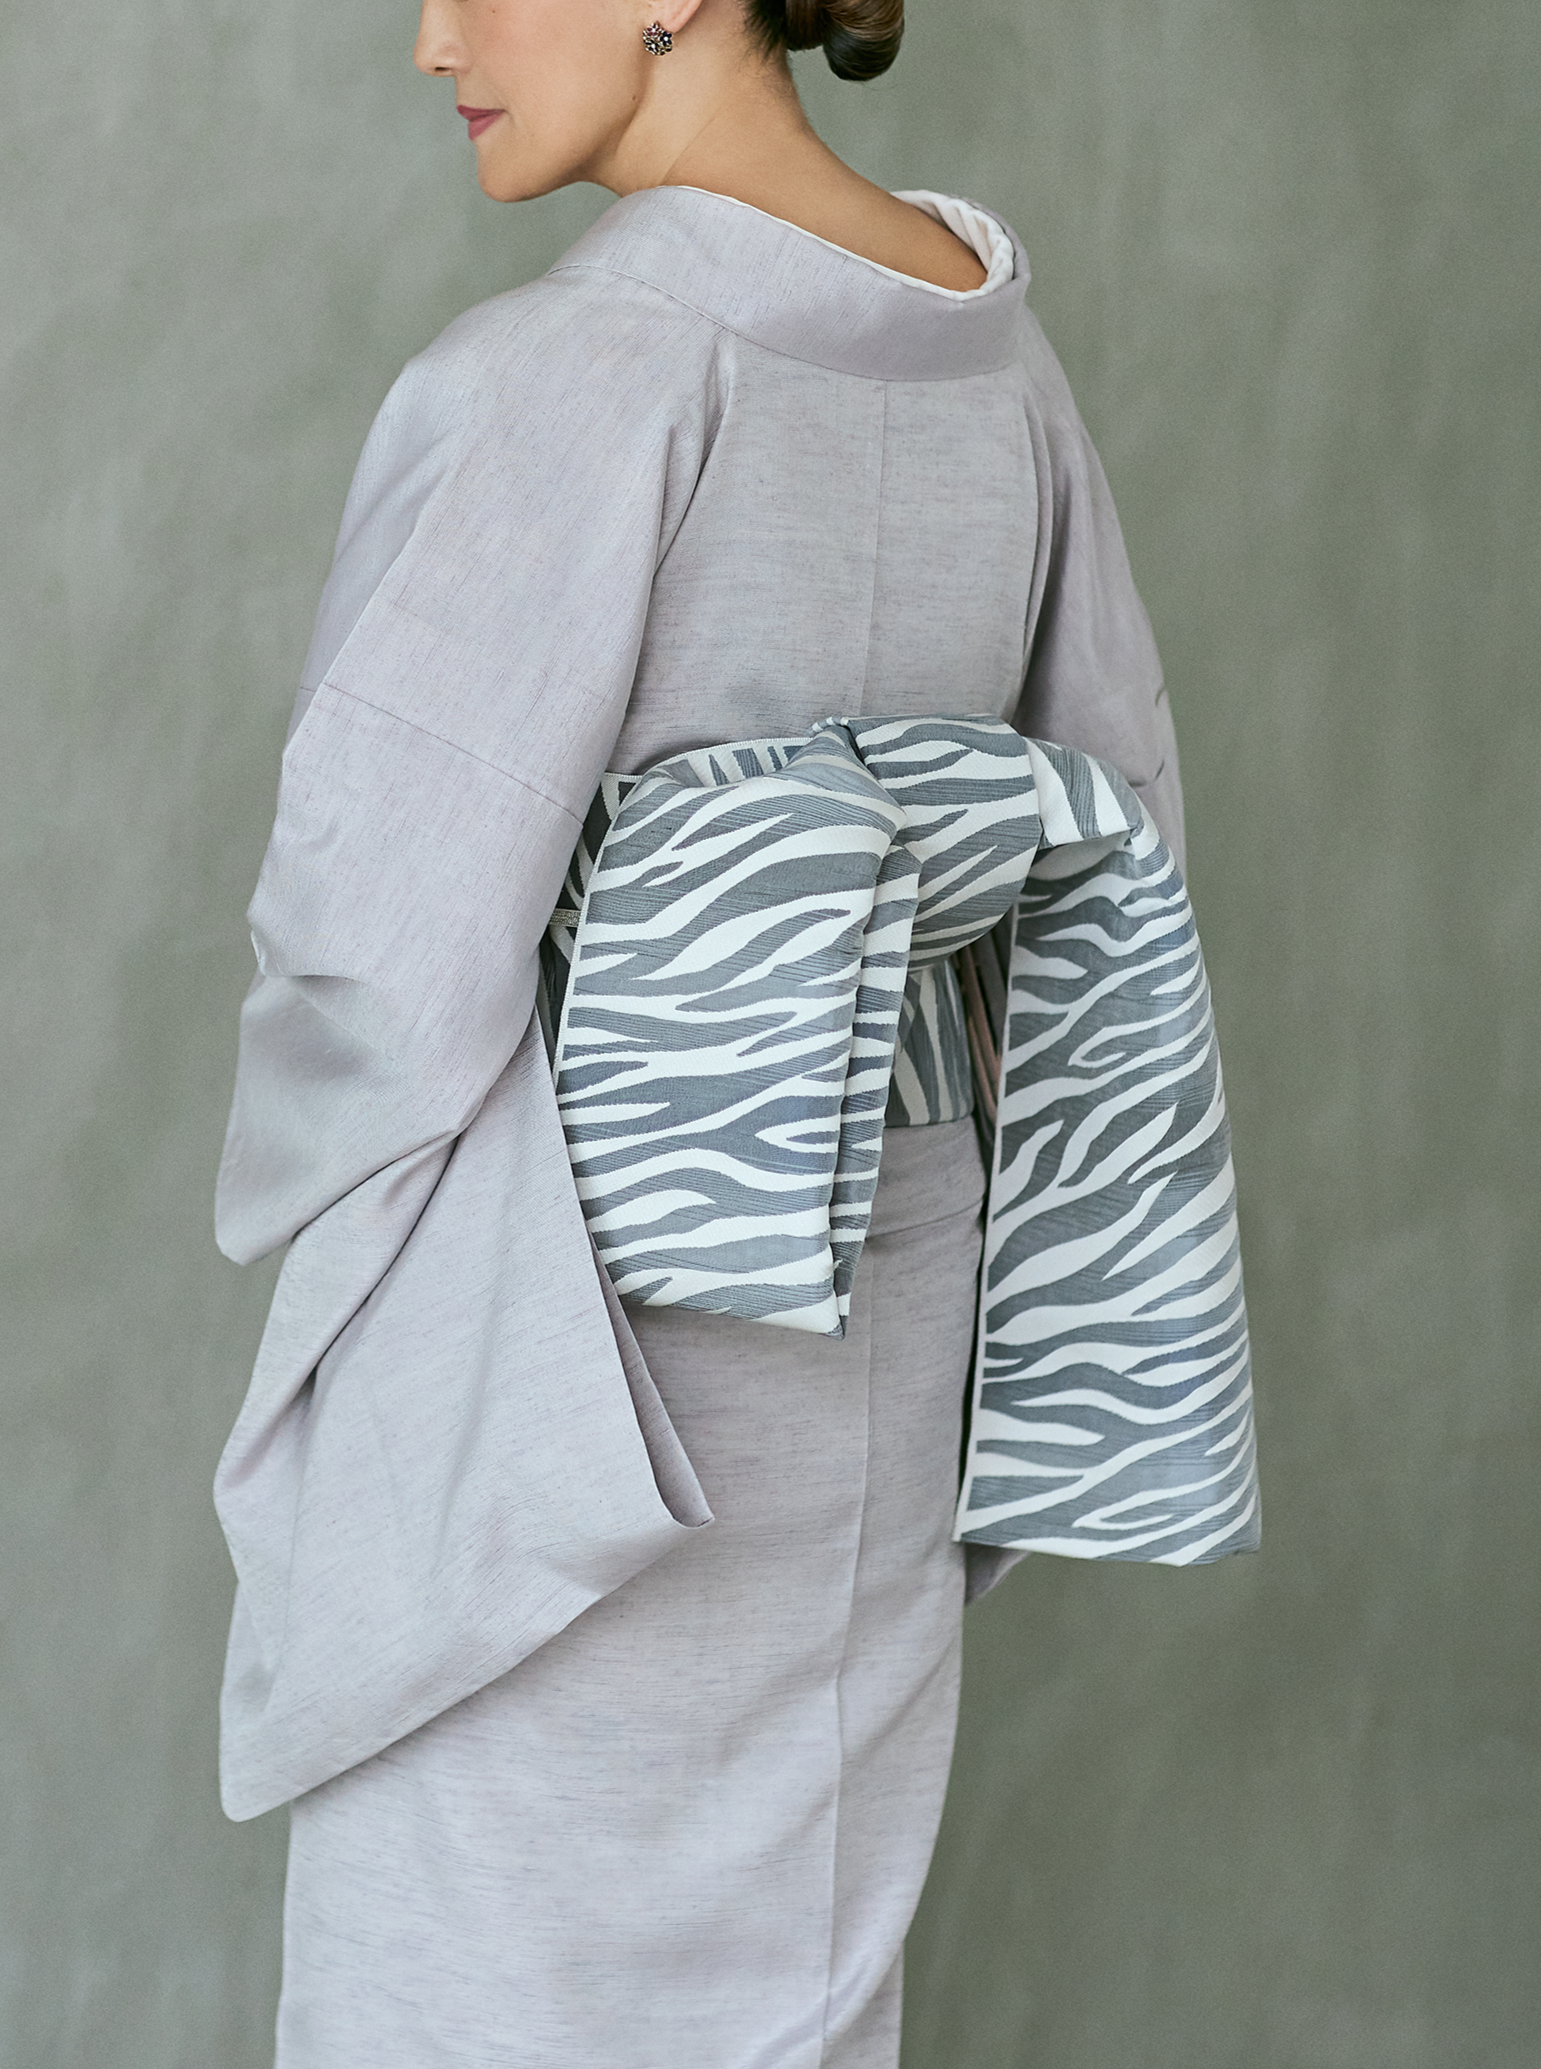 Kuroki Textile Hassun Obi Hakata Ori "Matelasse Zebra" White